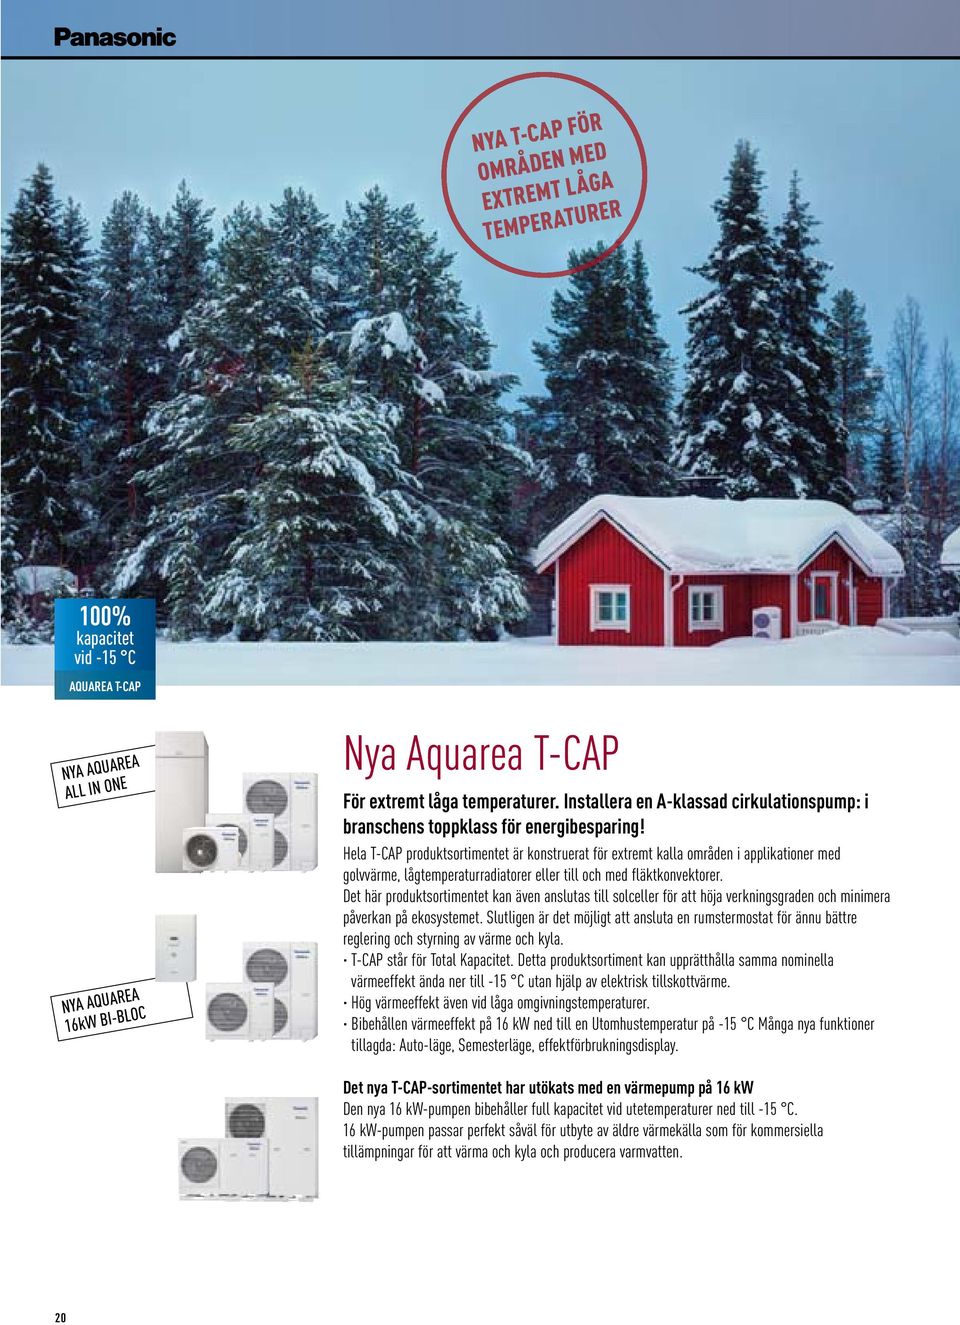 Hela T-CAP produktsortimentet är konstruerat för extremt kalla områden i applikationer med golvvärme, lågtemperaturradiatorer eller till och med fläktkonvektorer.